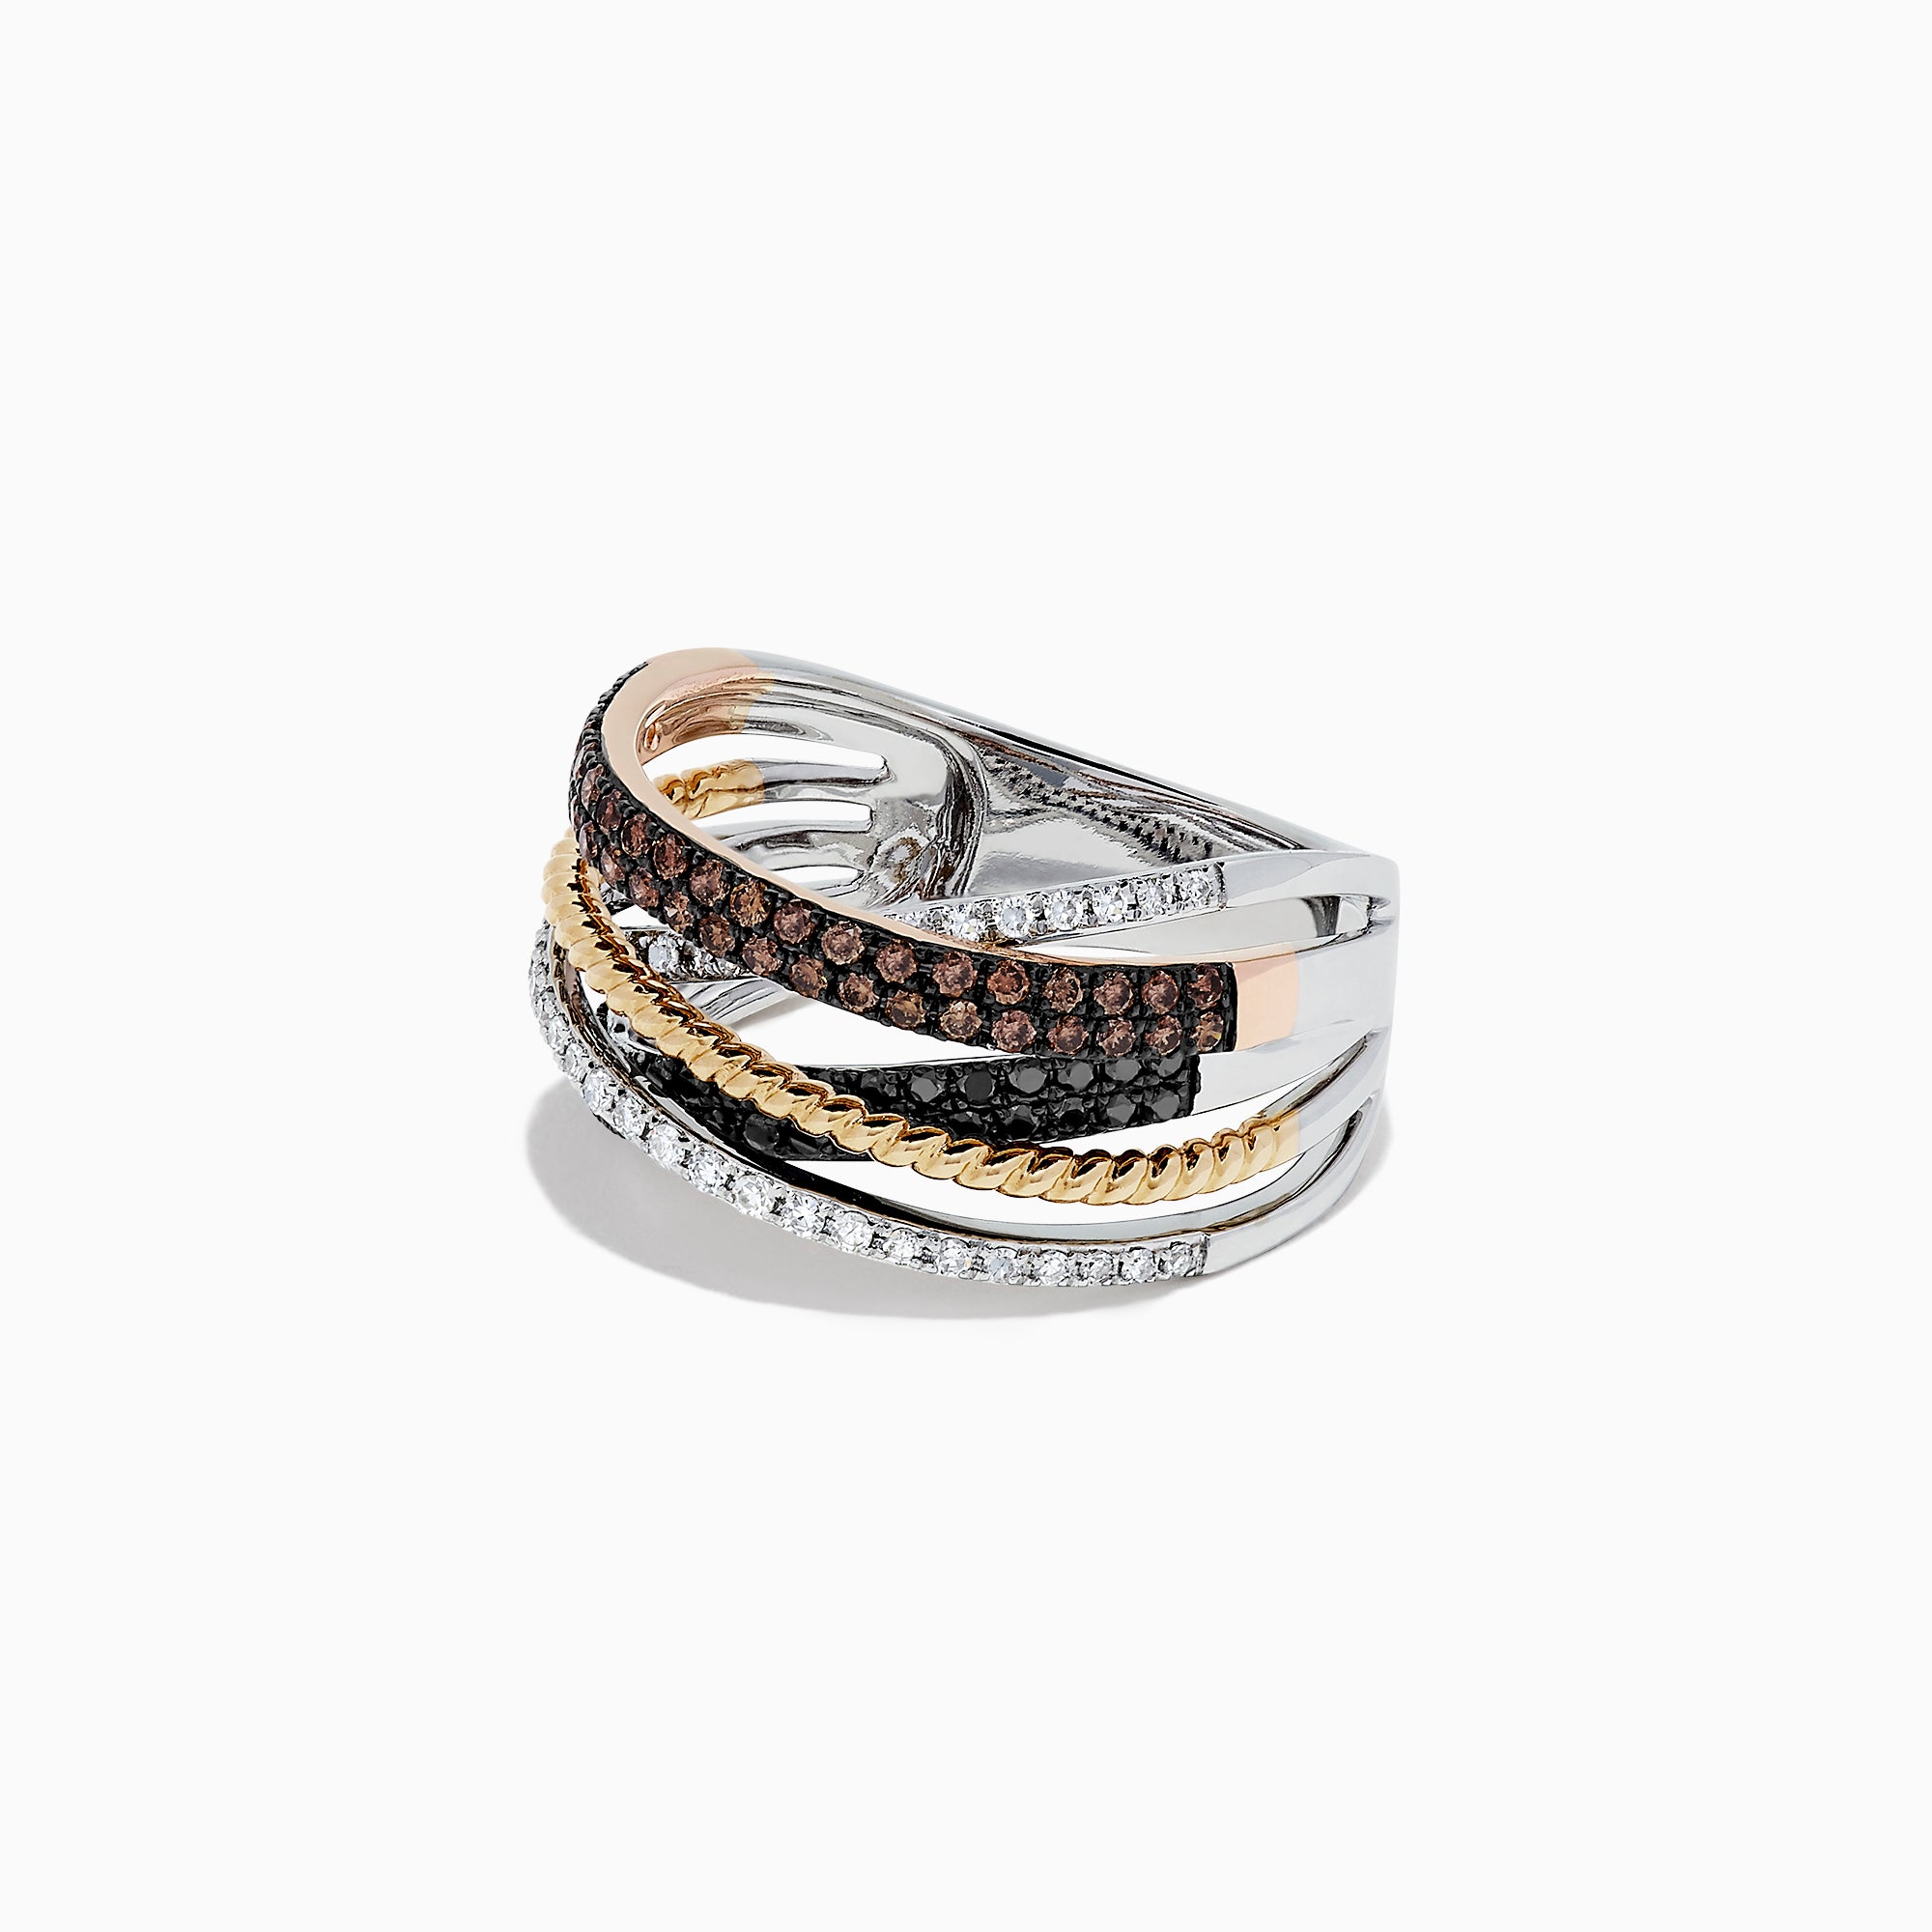 Effy 14K Tri-Color Gold Black, Espresso and White Diamond Ring, 0.38 TCW